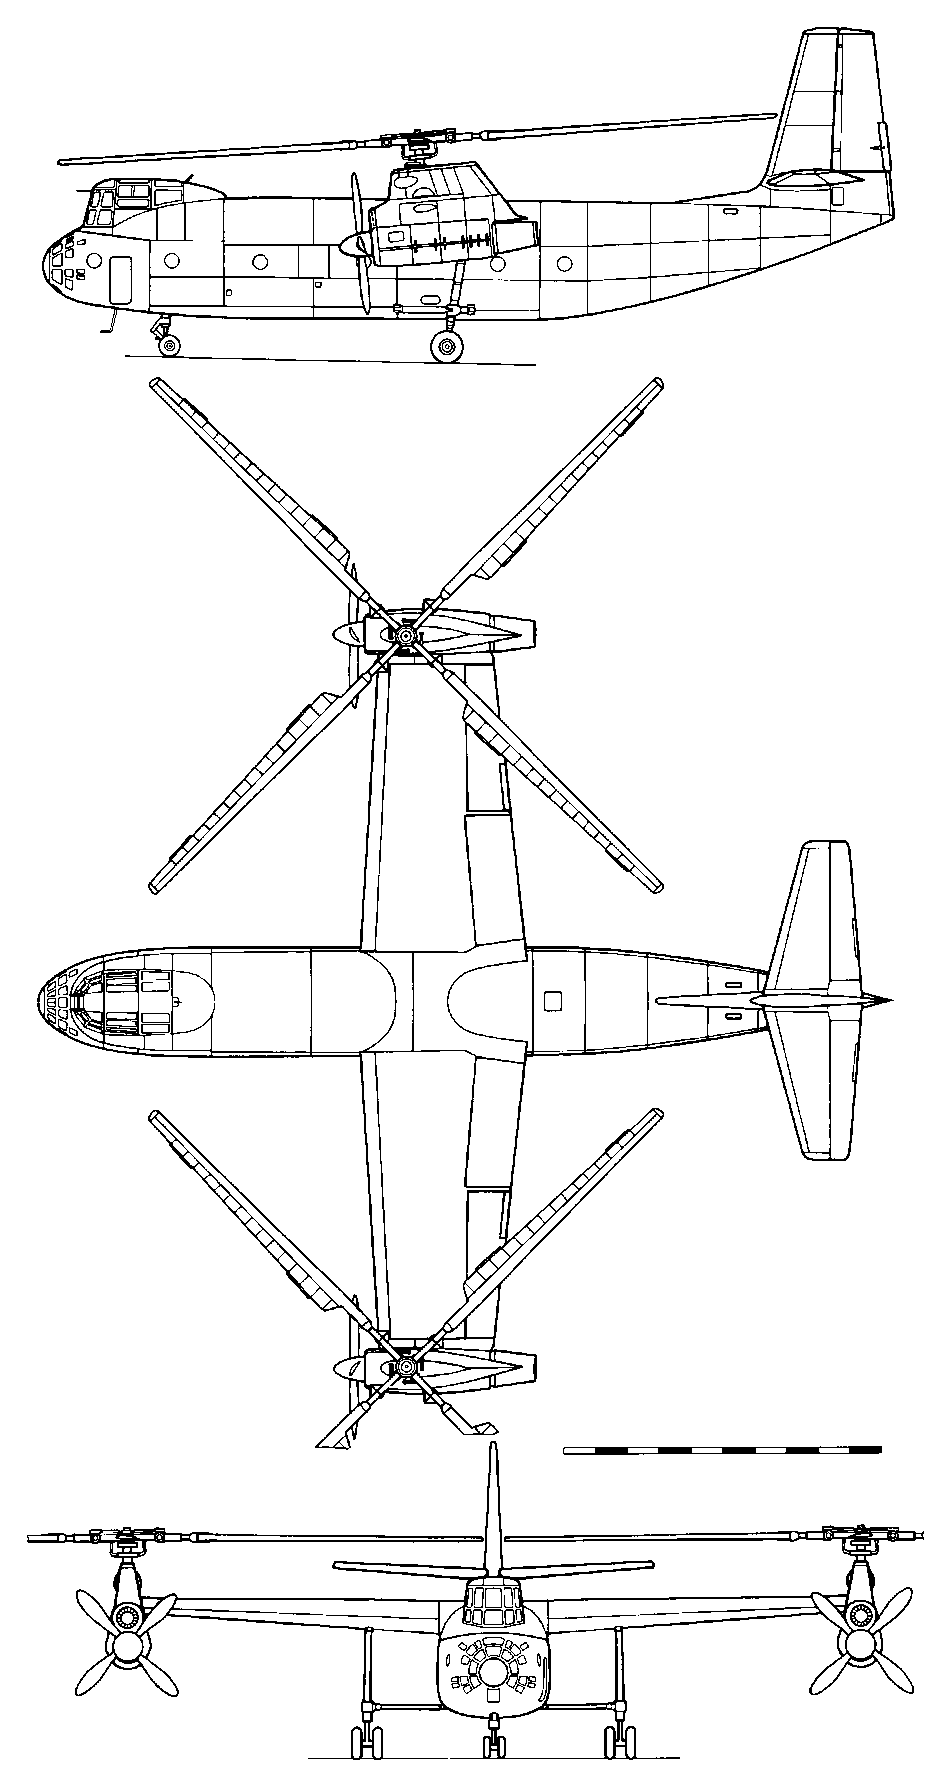 Kamov Ka-22 "Vintokryl"